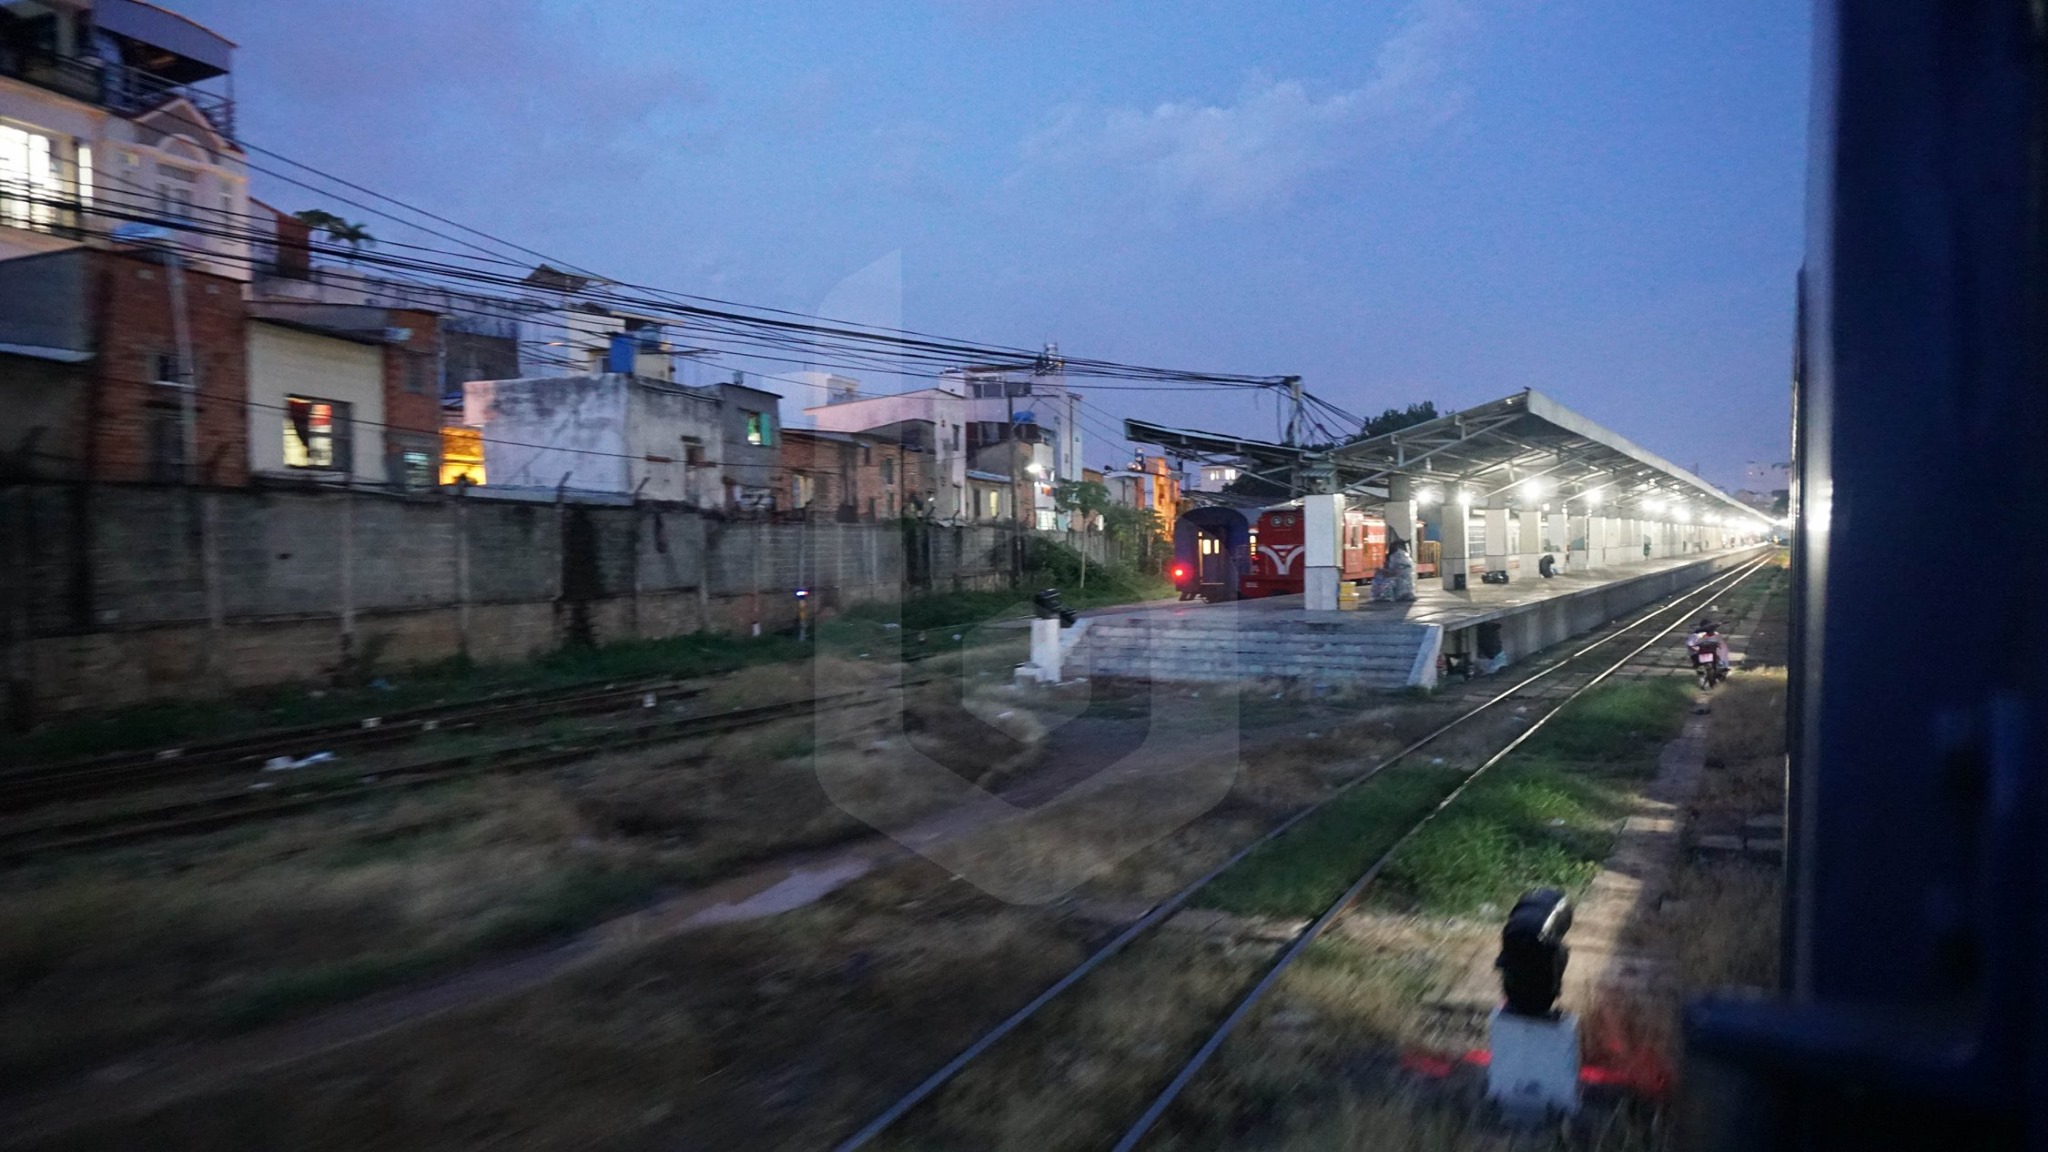 Saigon to Phan Thiet by train